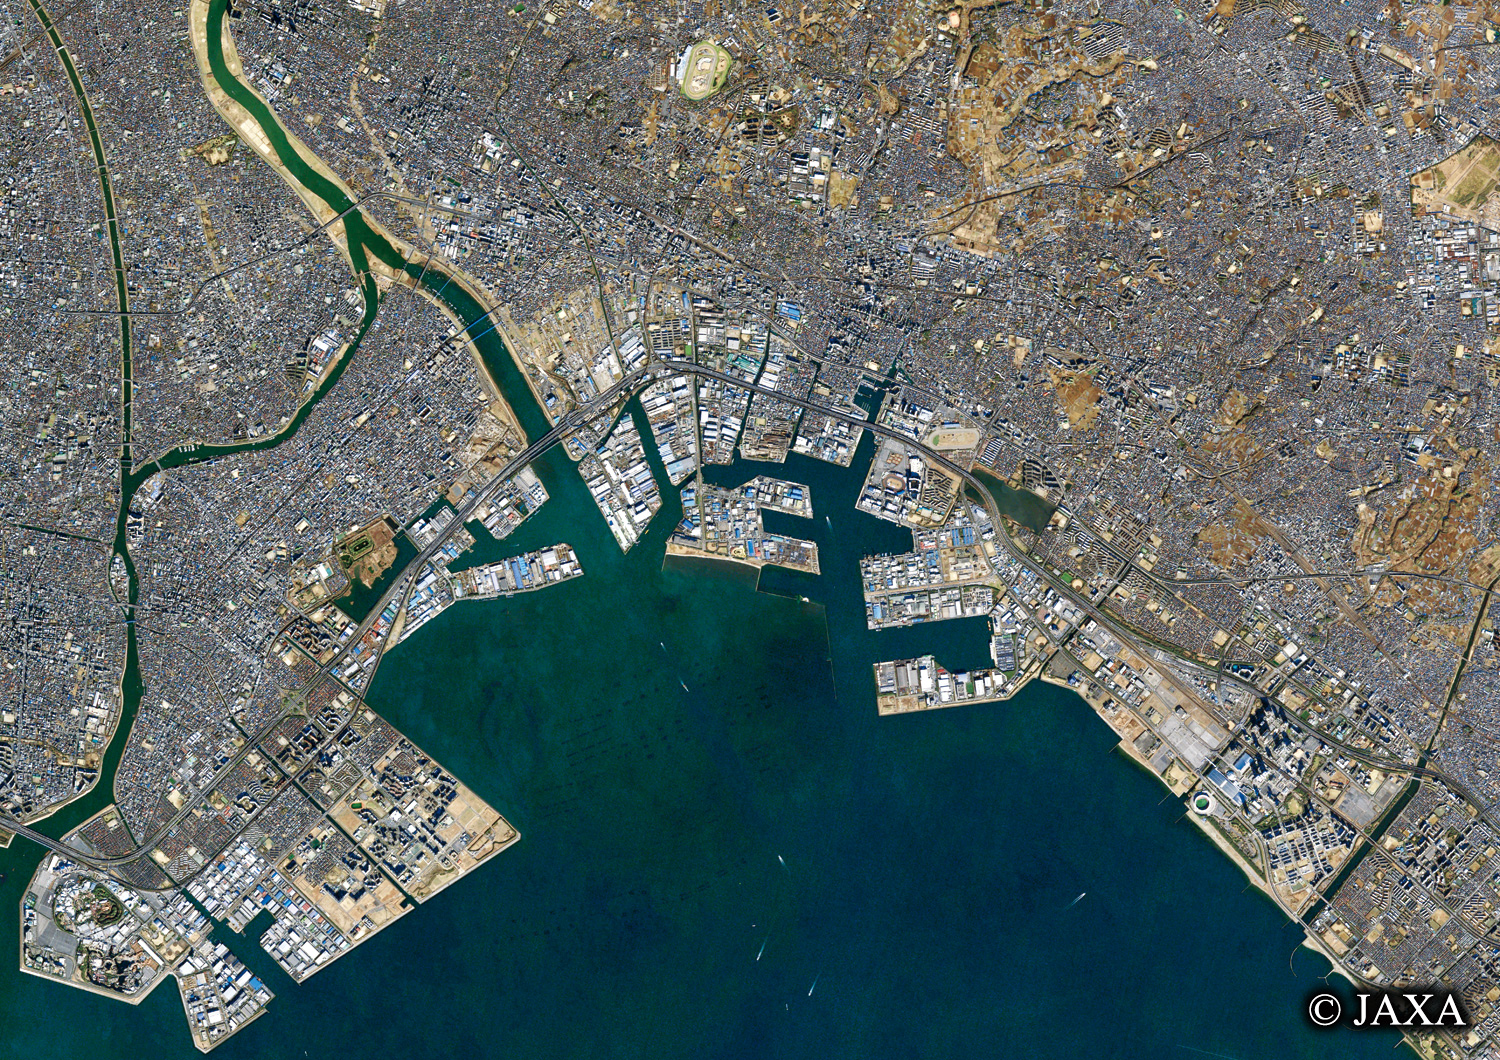 だいちから見た日本の都市 船橋市周辺:衛星画像